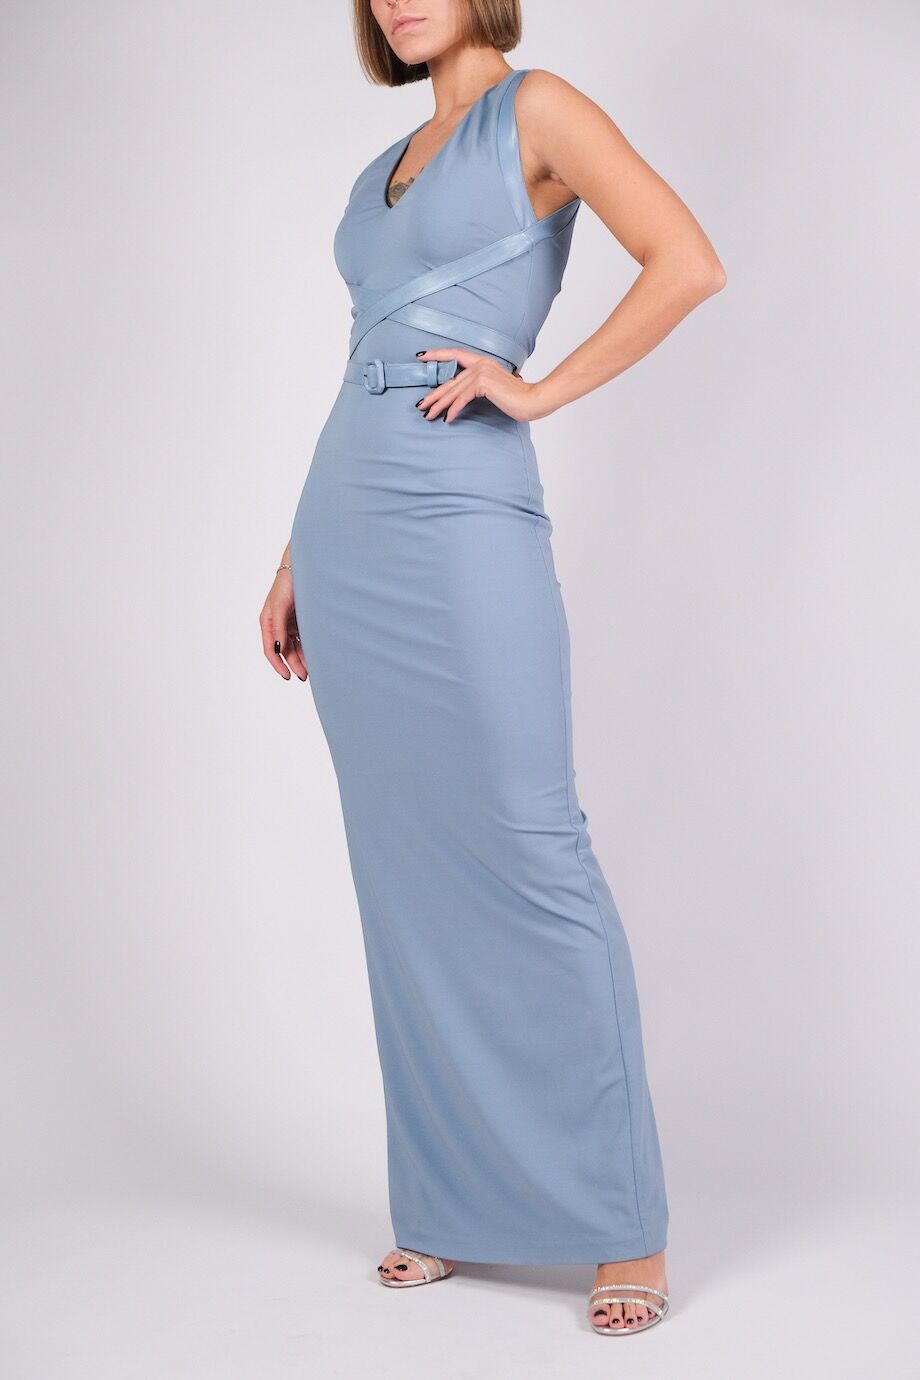 image 2 Платье в пол голубого цвета с кожаным поясом